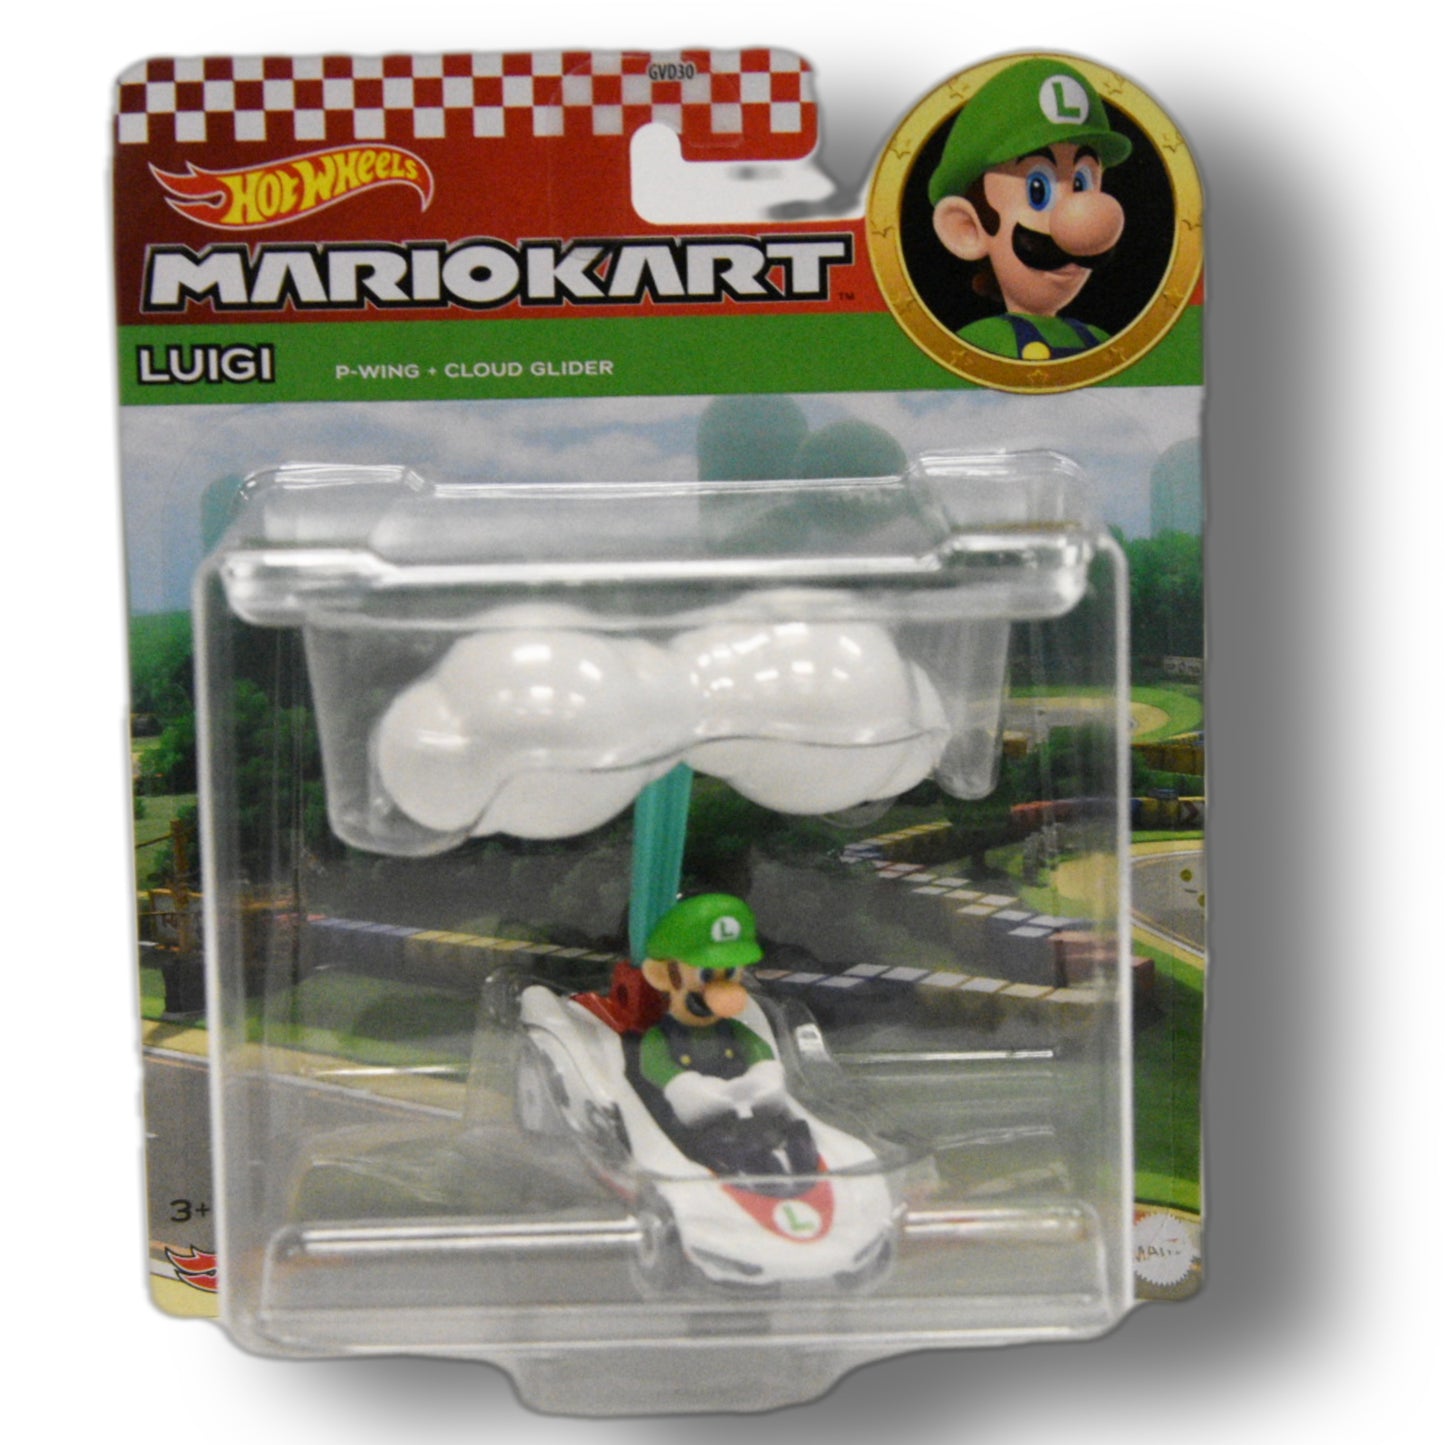 Hot Wheels MarioKart Luigi